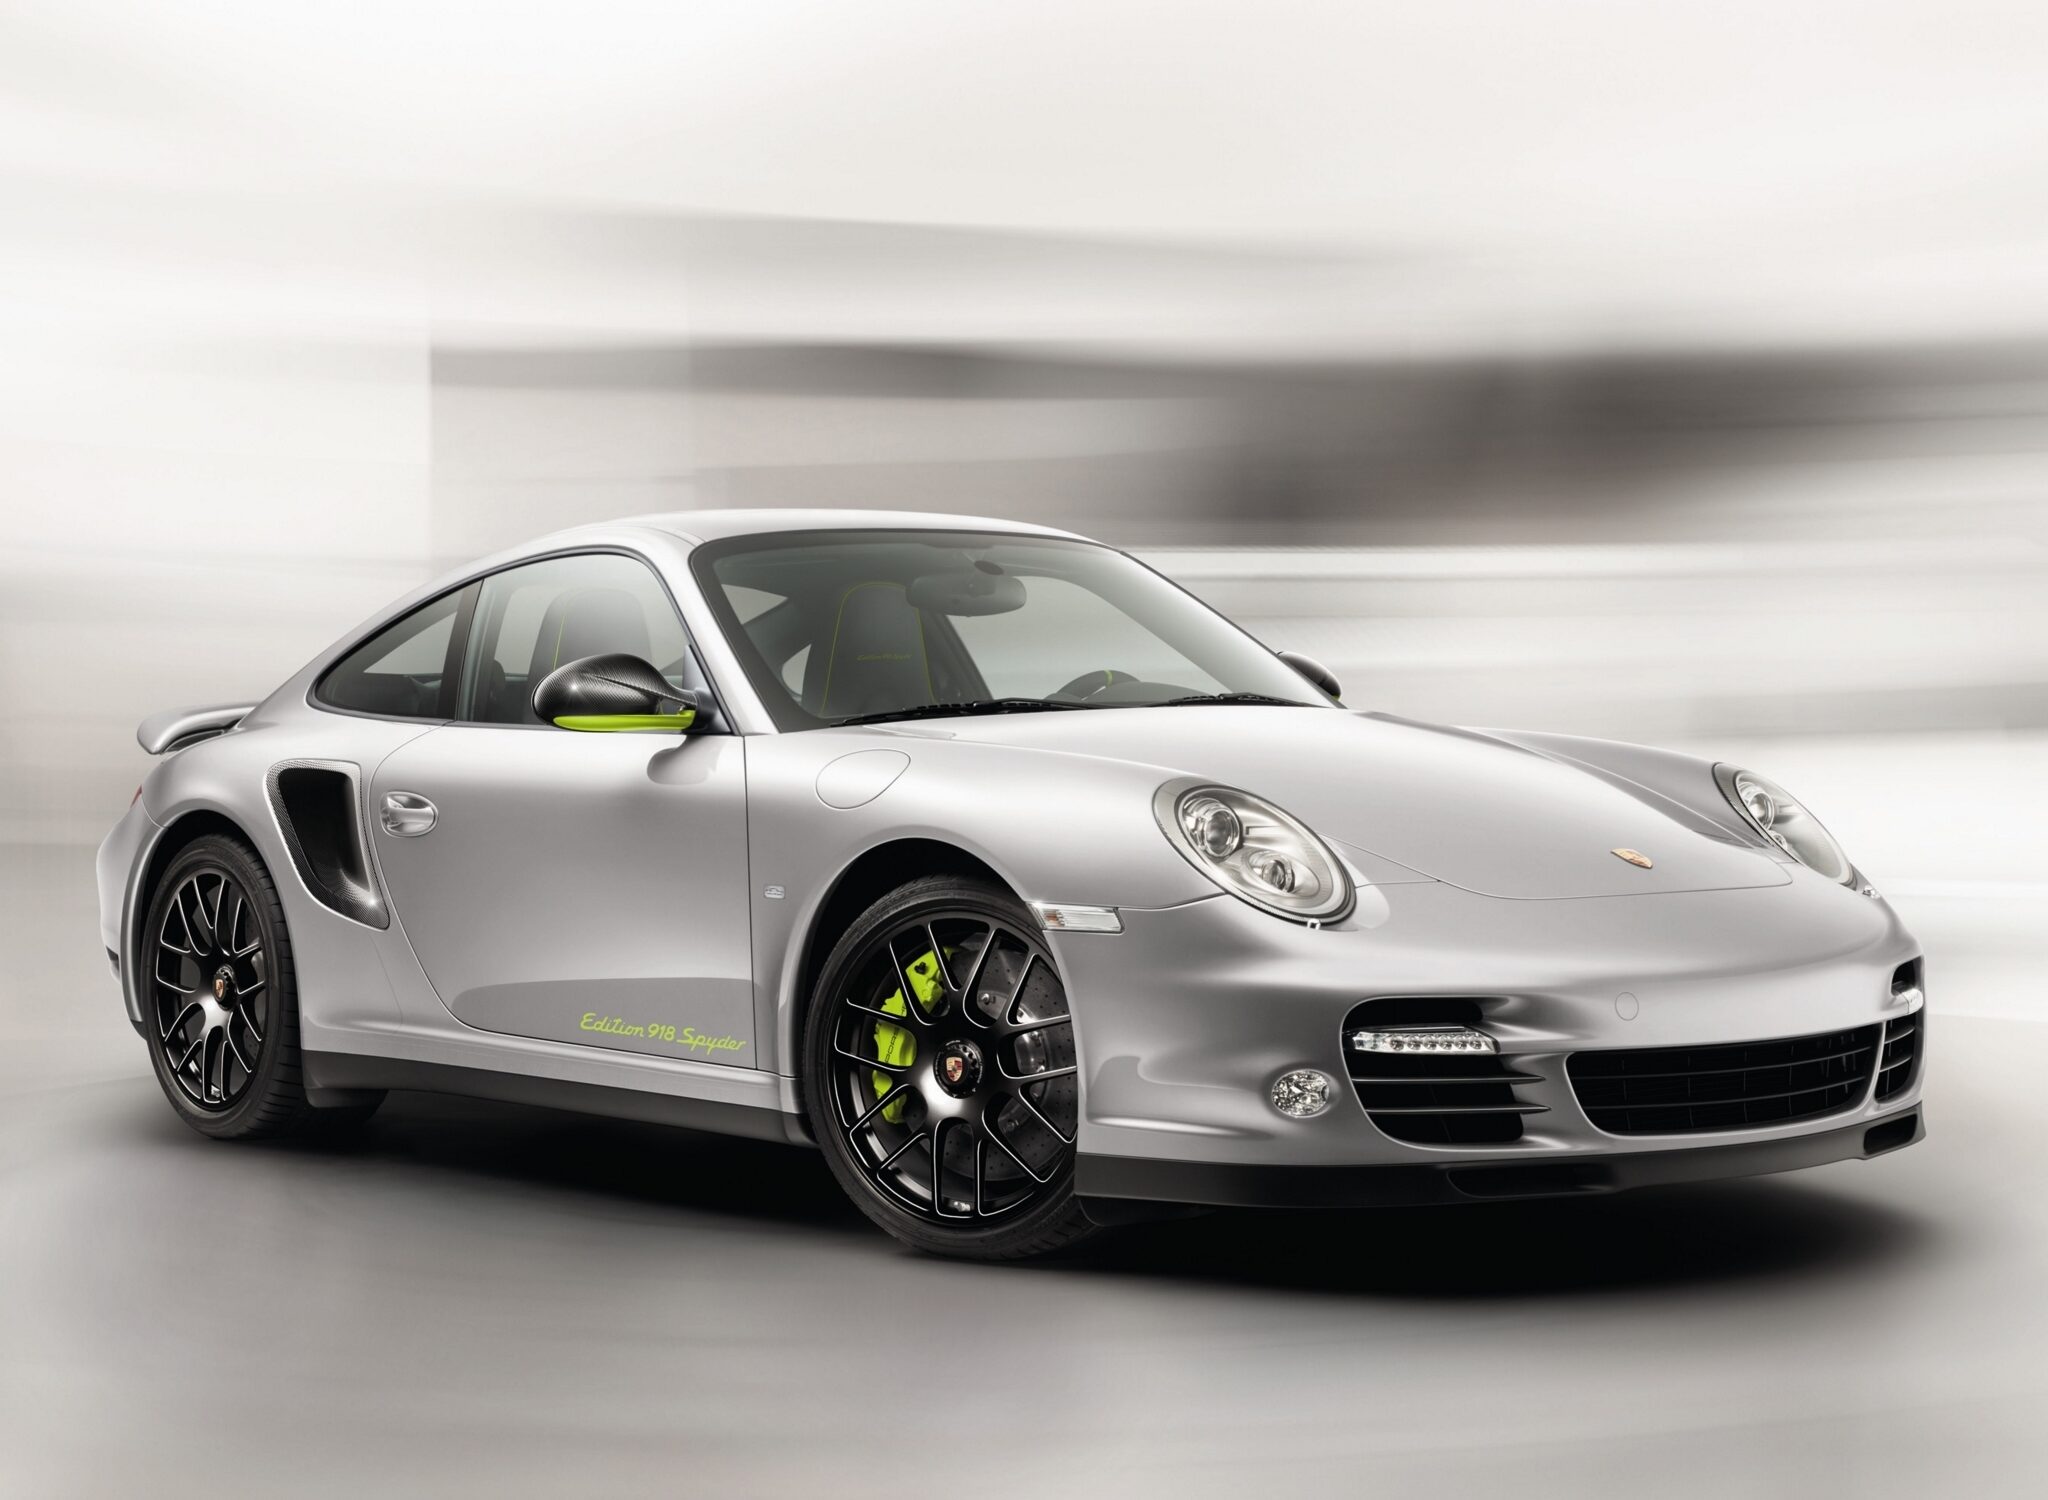 Porsche Of The Day: 2012 Porsche 911 Turbo S “Edition 918 Spyder”